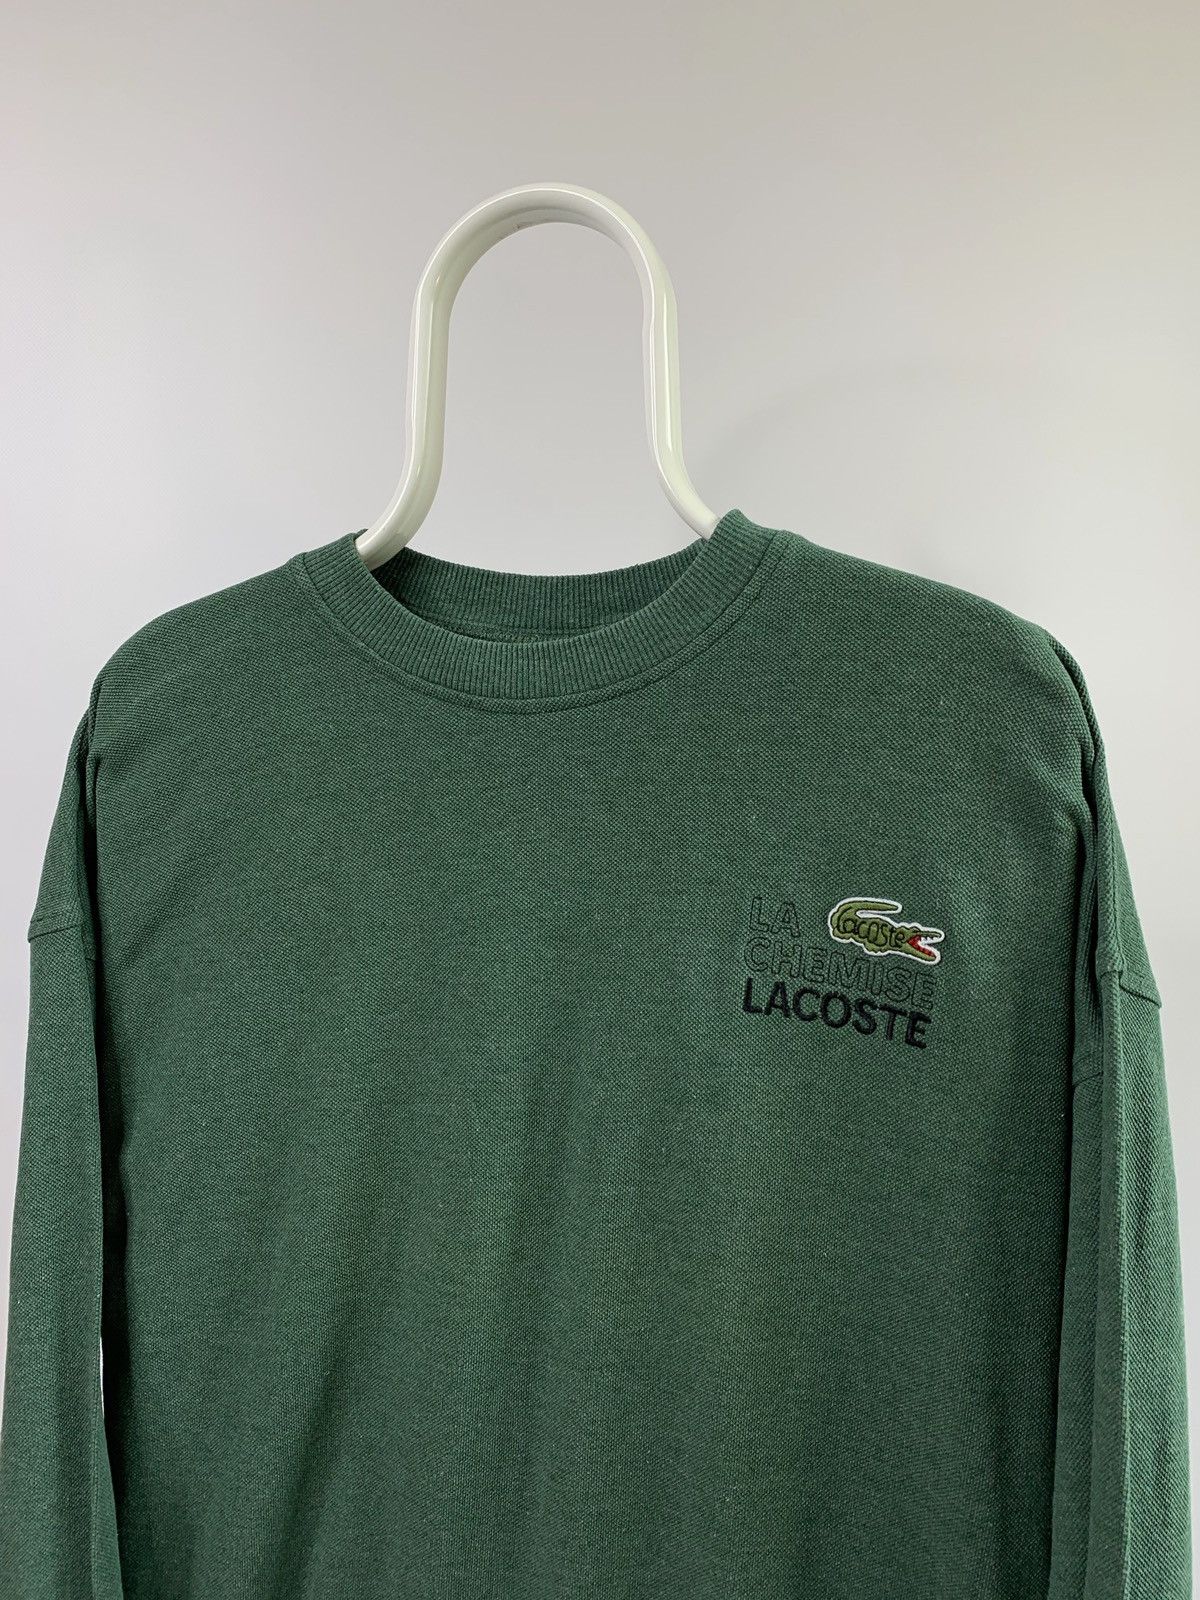 Vintage 90s vintage Lacoste la chemise Paris color green | Grailed